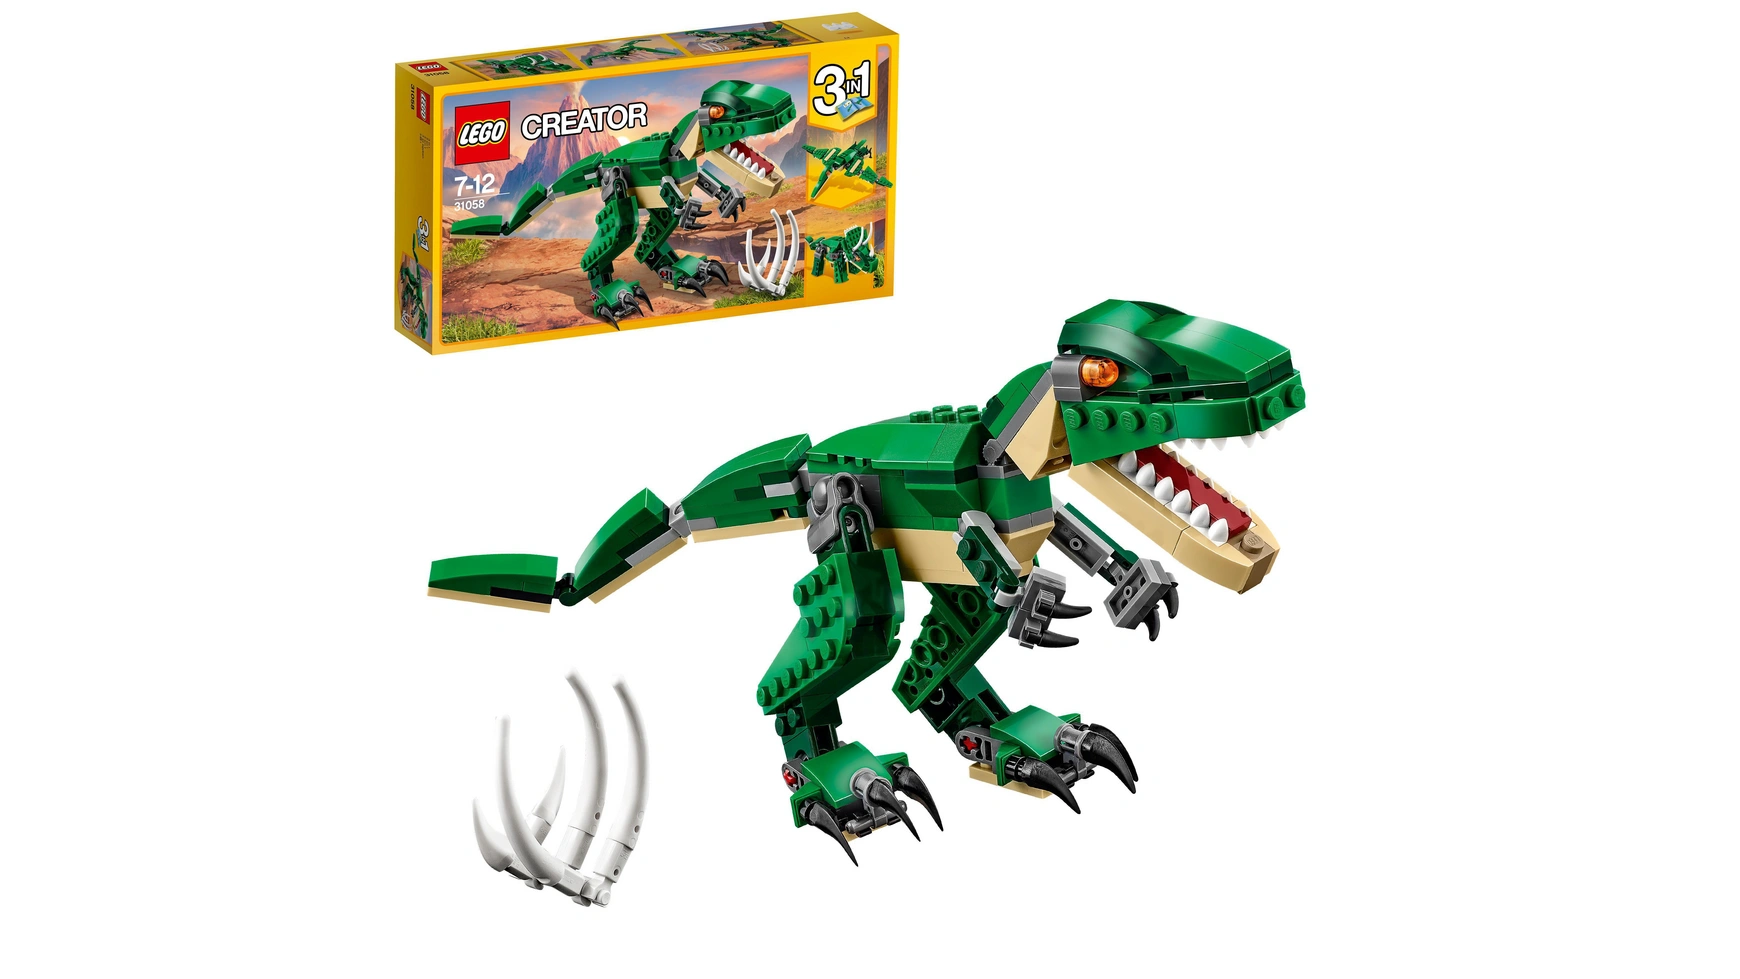 Lego Creator Набор игрушечных моделей динозавров 3-в-1 для детей